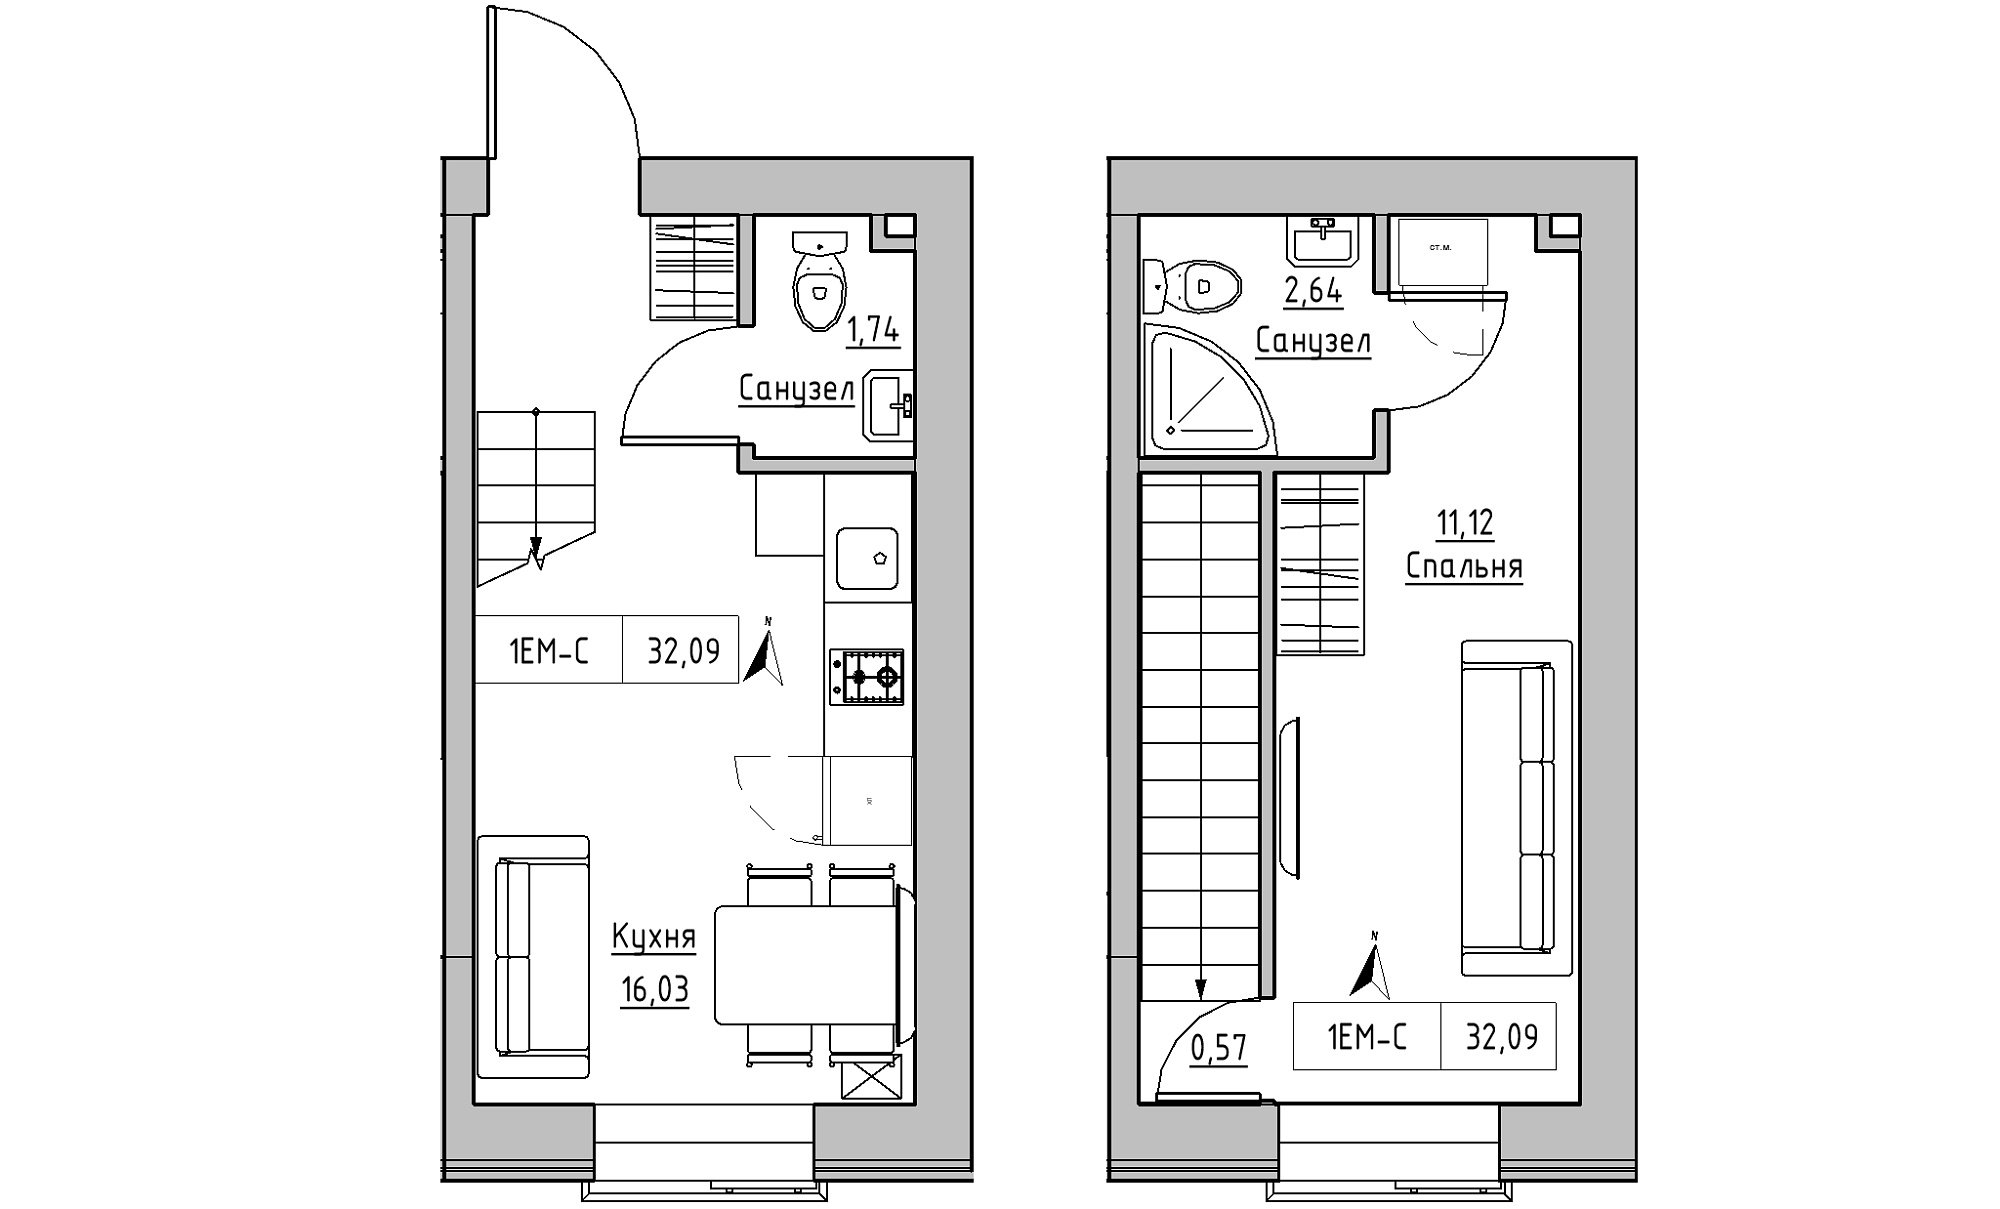 Planning 2-lvl flats area 24.96m2, KS-023-03/0012.